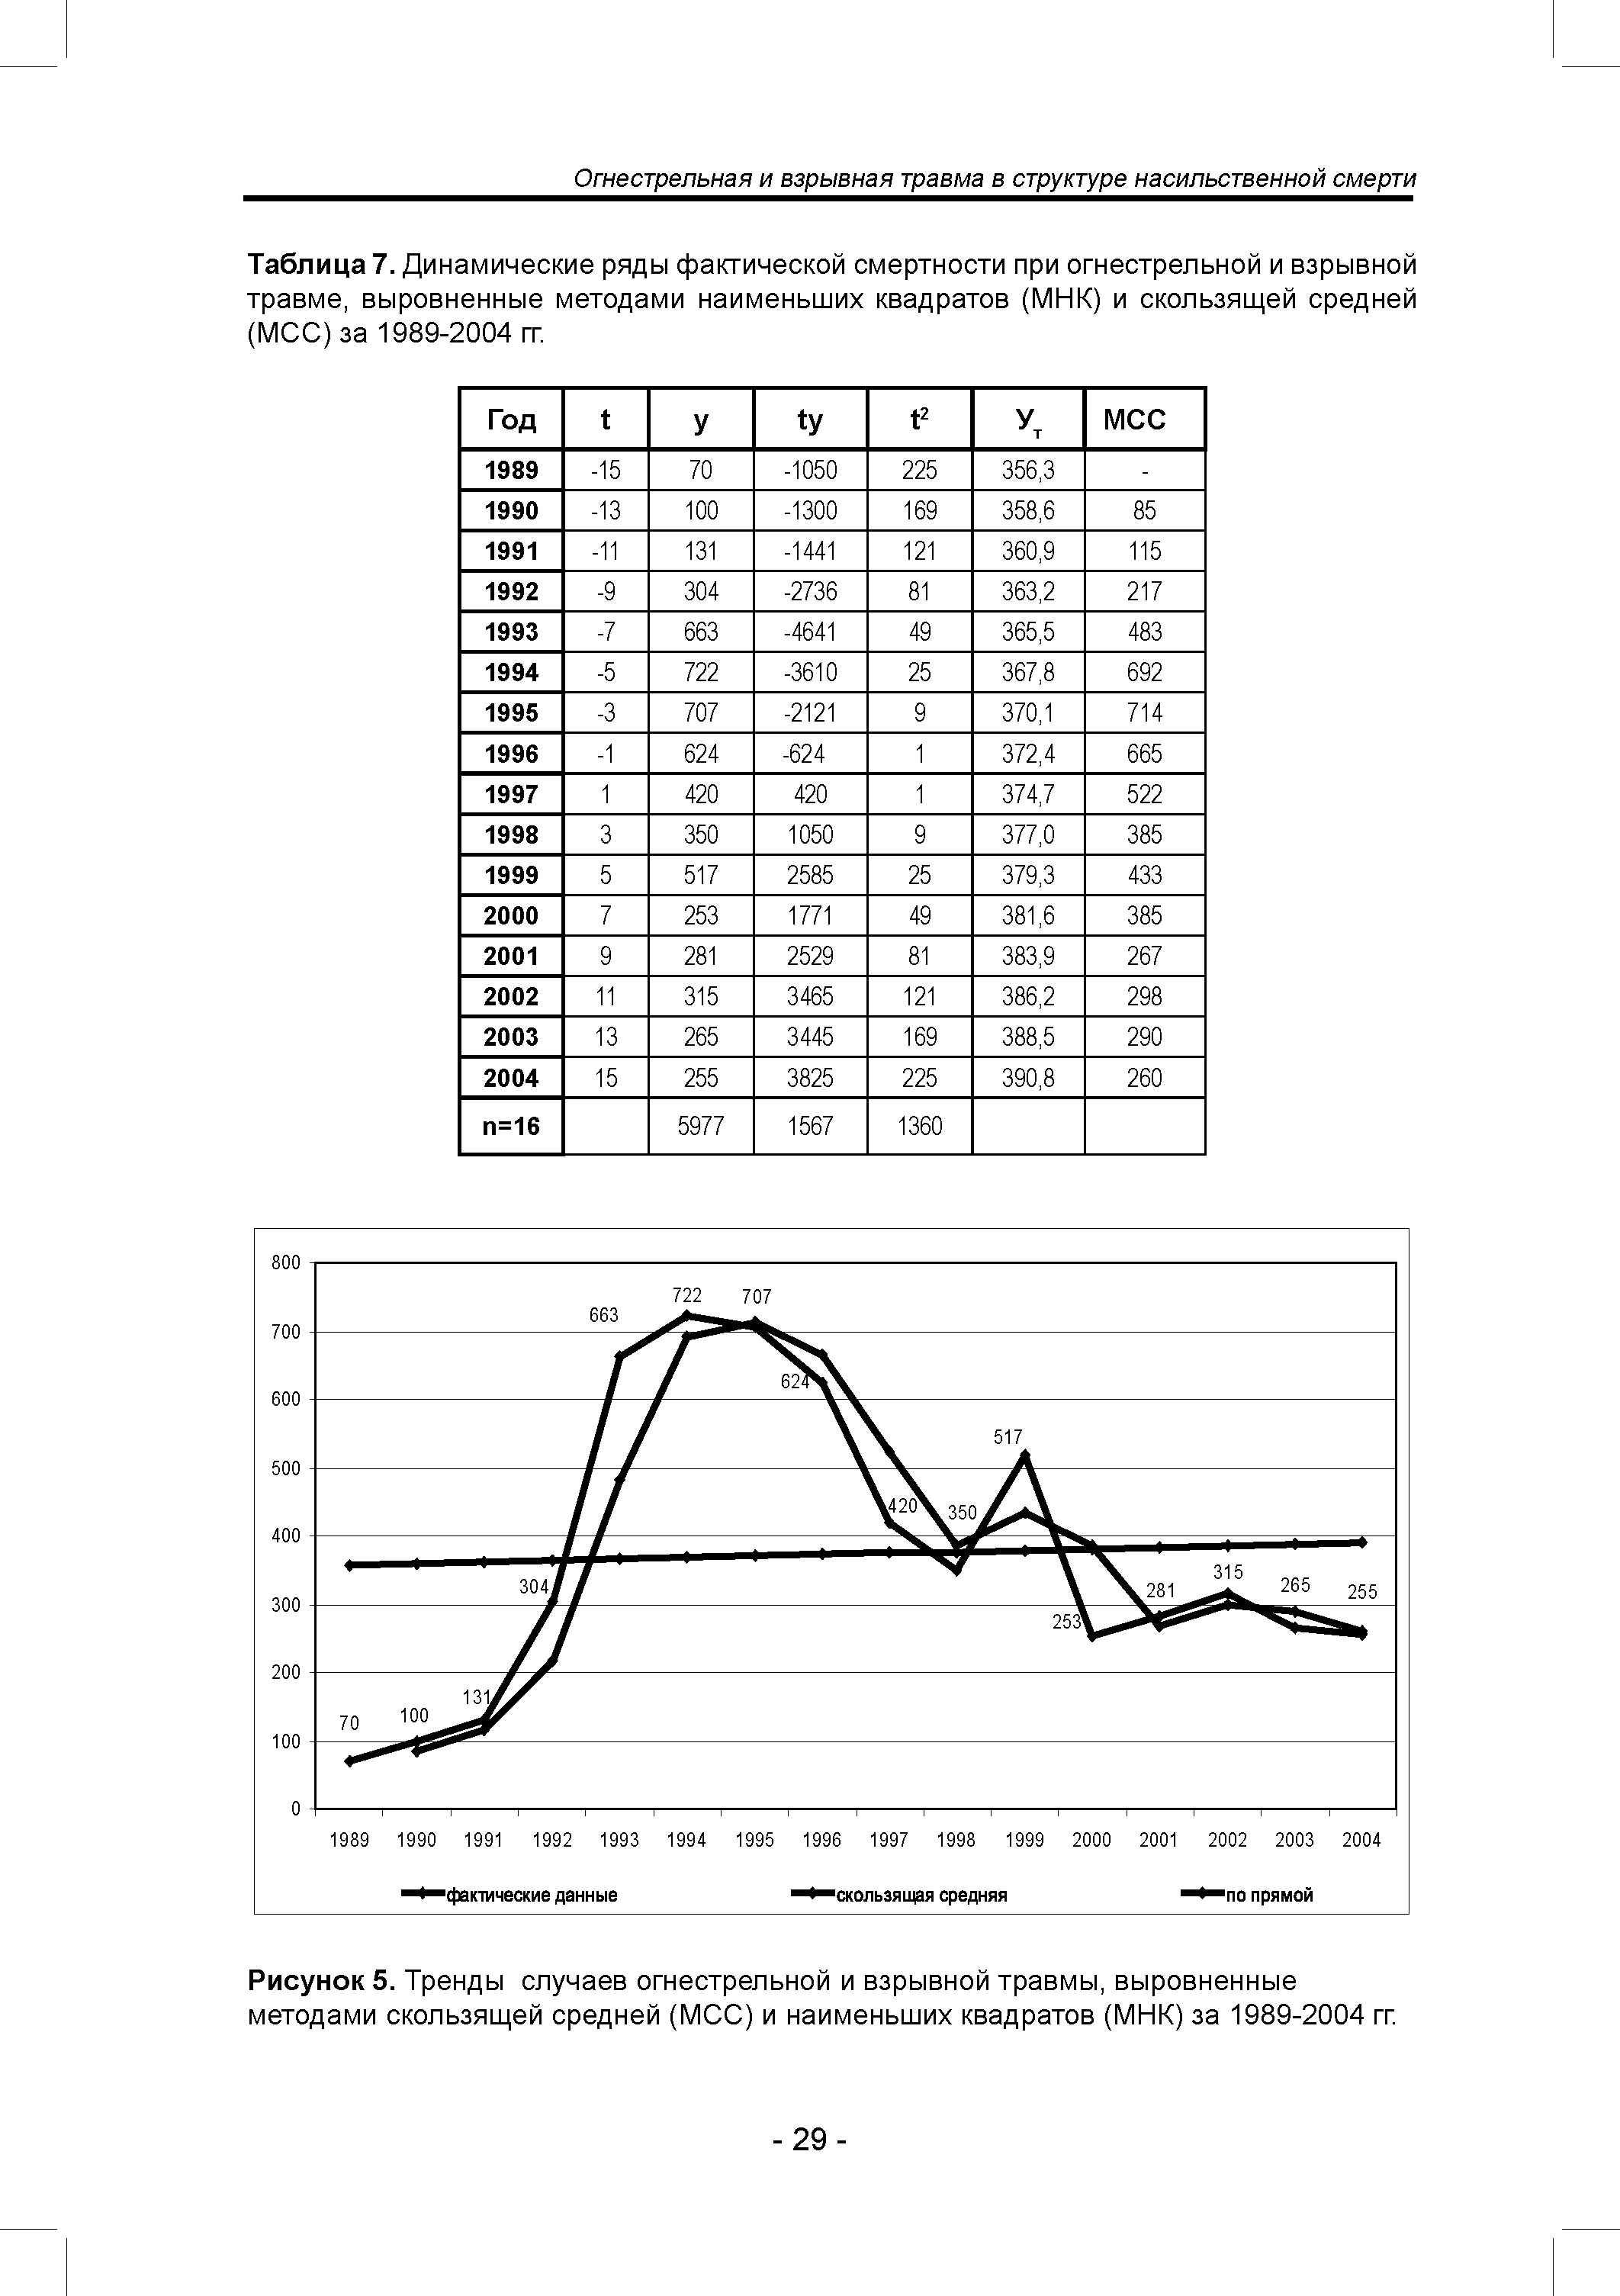 Таблица 7. Динамические ряды фактической смертности при огнестрельной и взрывной травме, выровненные методами наименьших квадратов (МНК) и скользящей средней (МСС)за 1989-2004 гг.